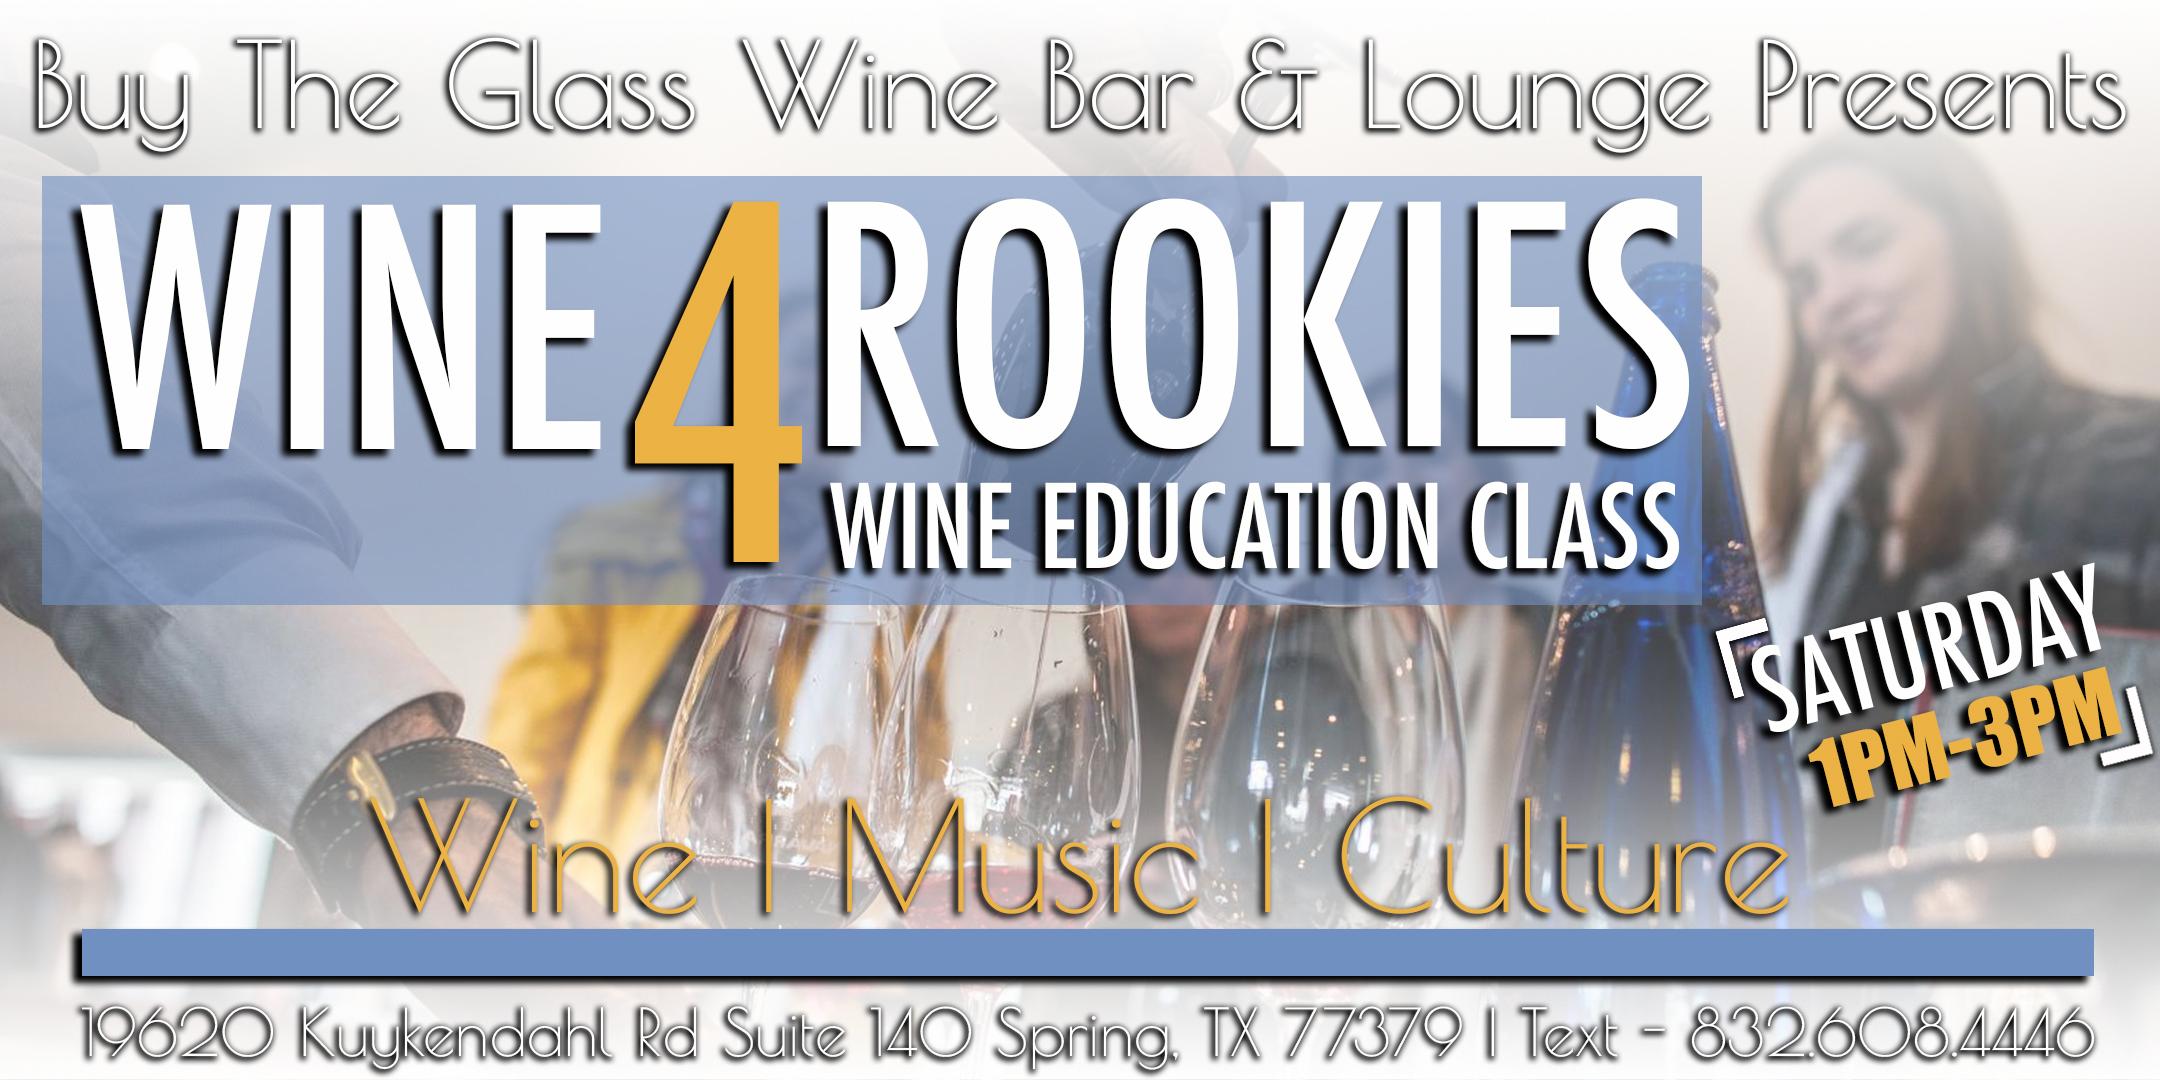 Wine Tasting & Wine Education Class | Craft Beer & Wine Tasting